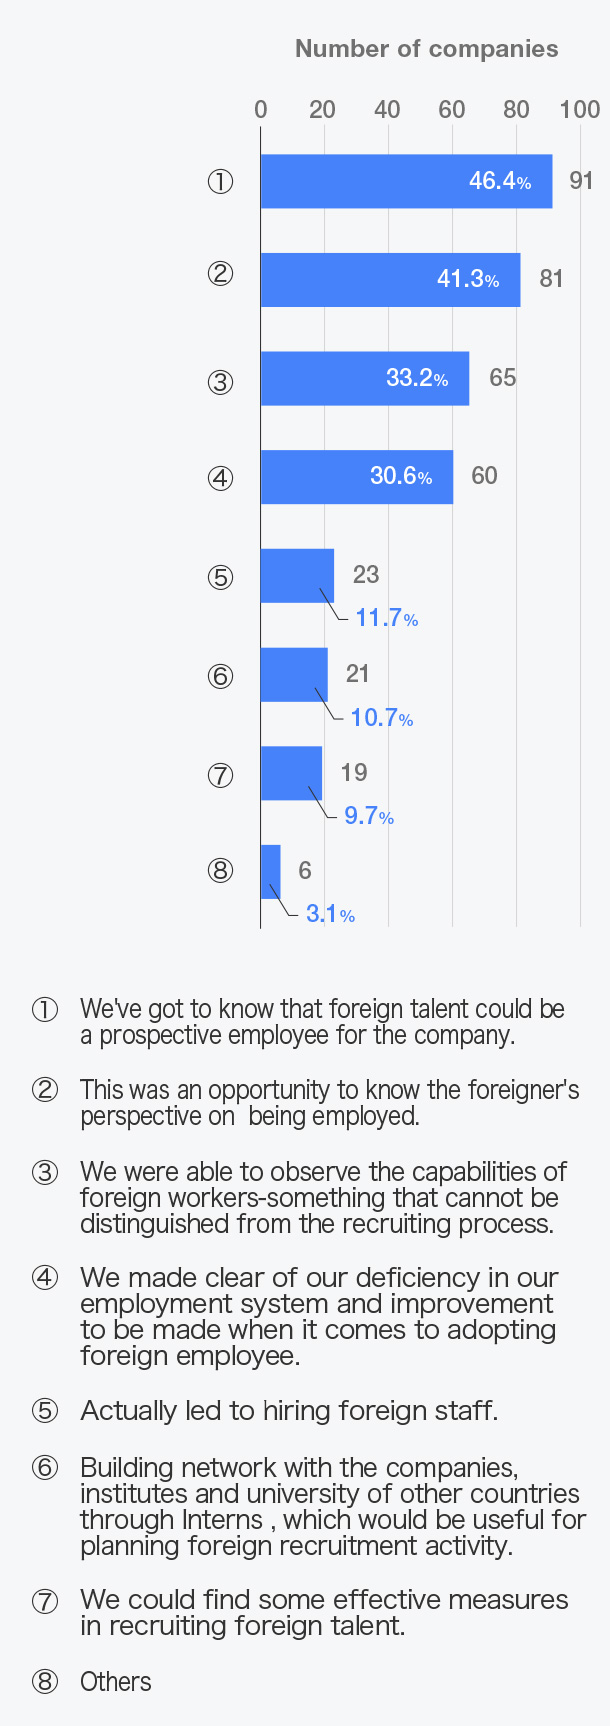 「外国人採用」についてどのようにつながりましたか？（複数回答）